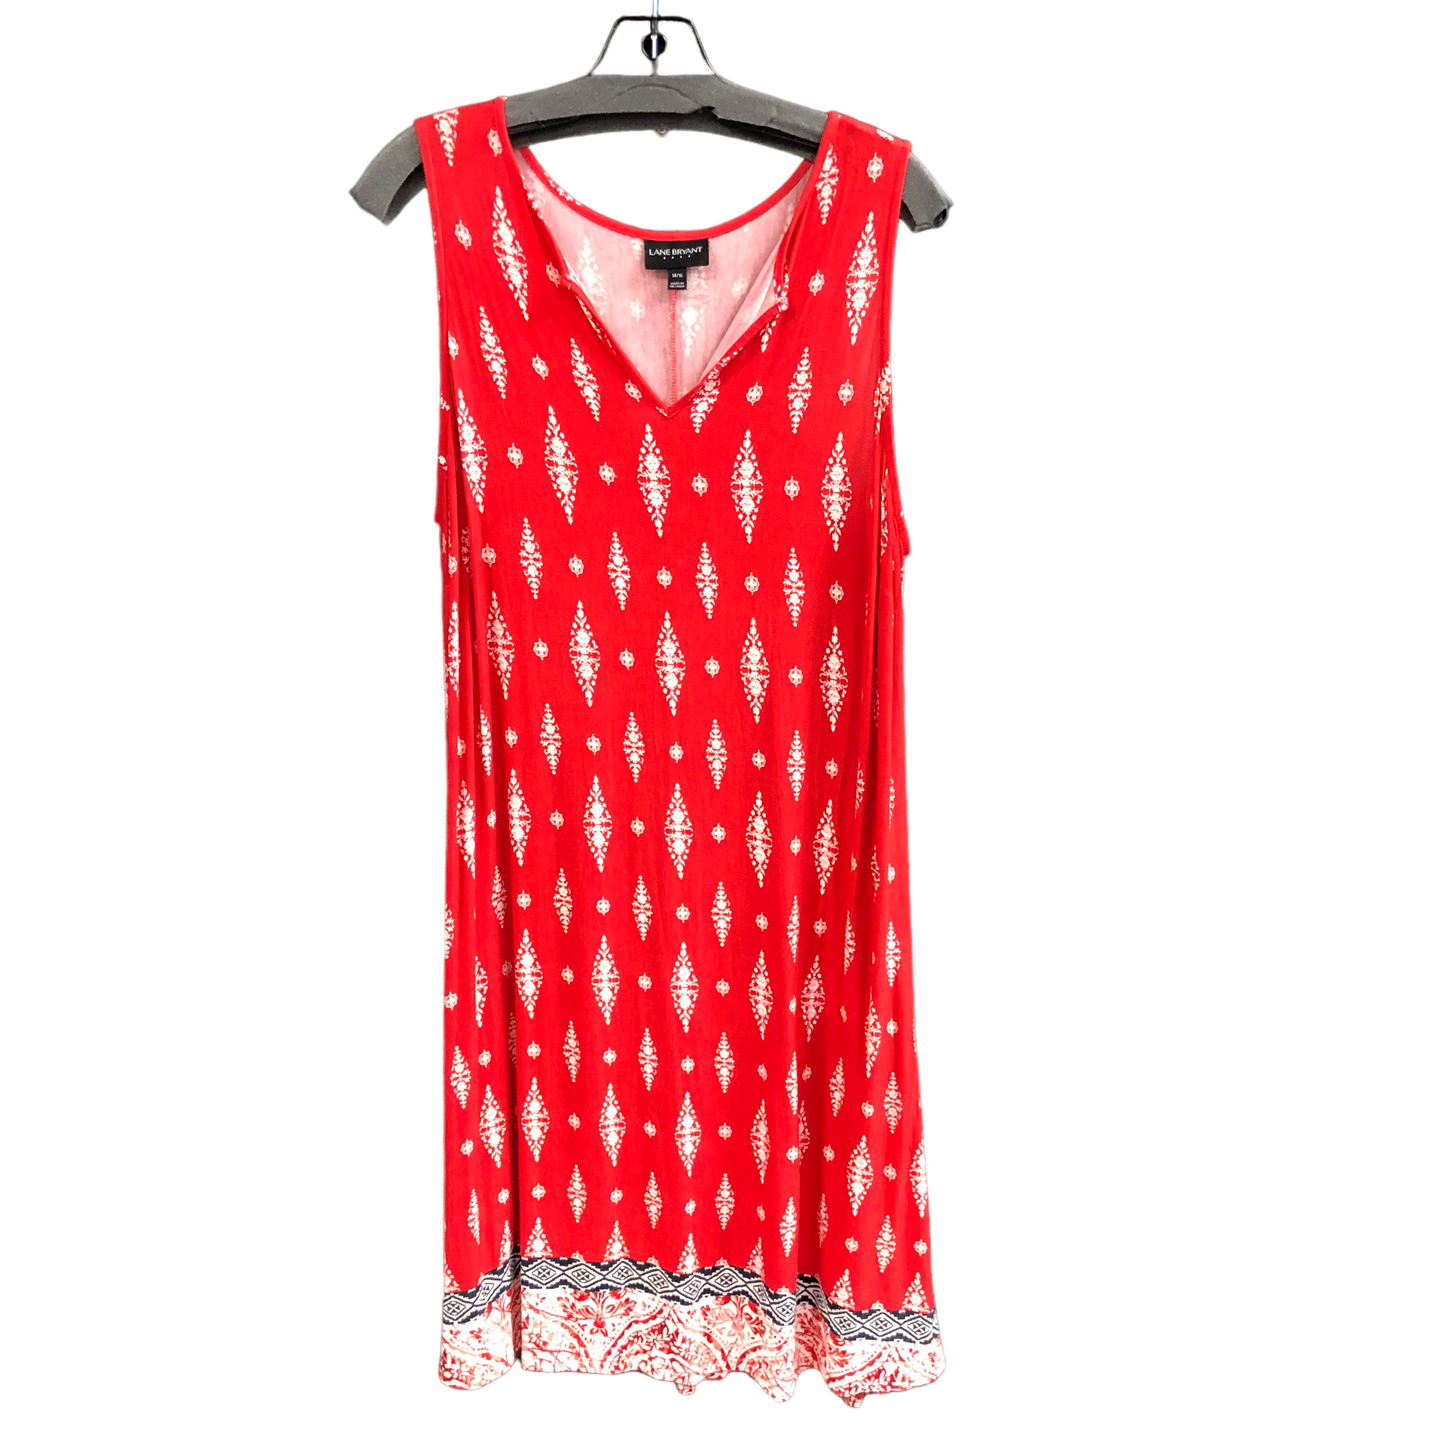 Dress Casual Midi By Lane Bryant  Size: 14